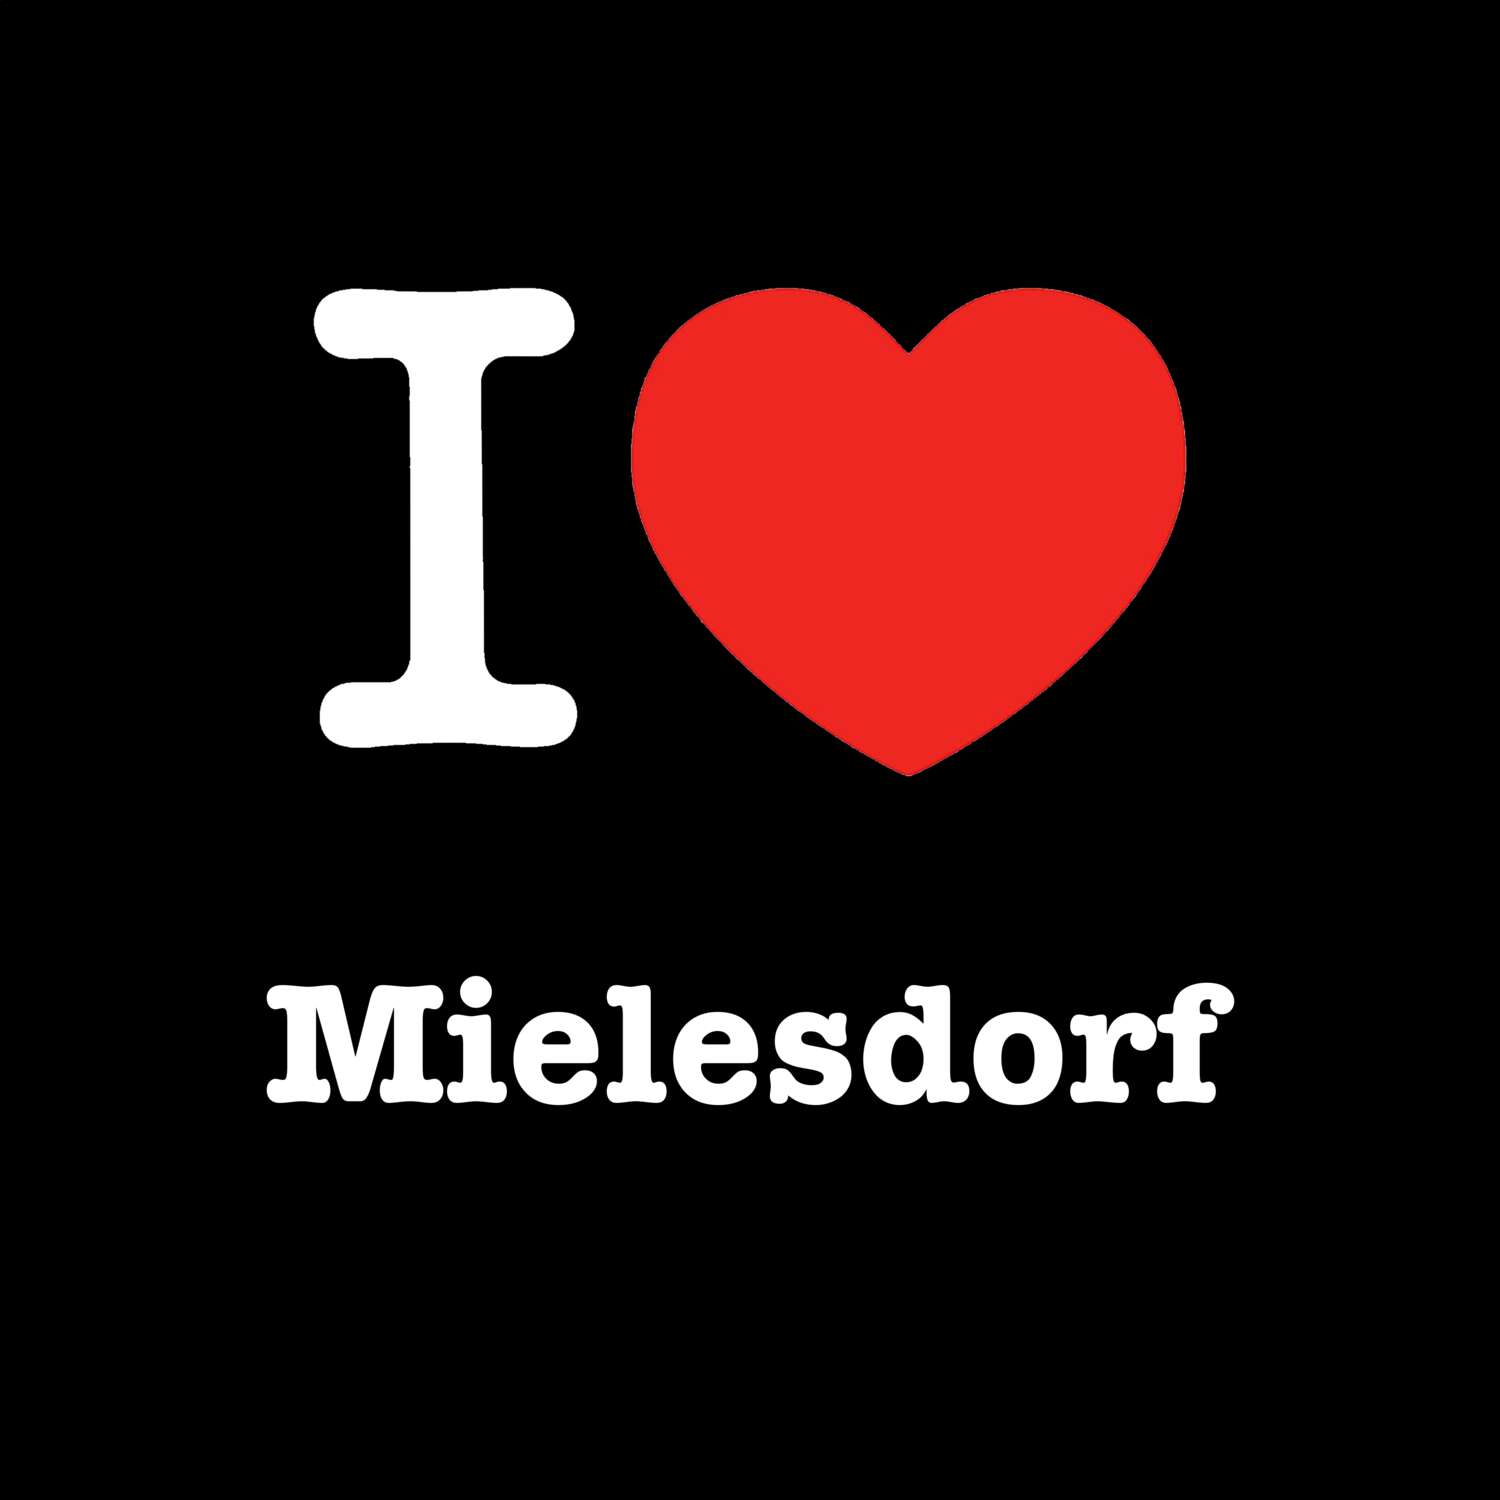 Mielesdorf T-Shirt »I love«